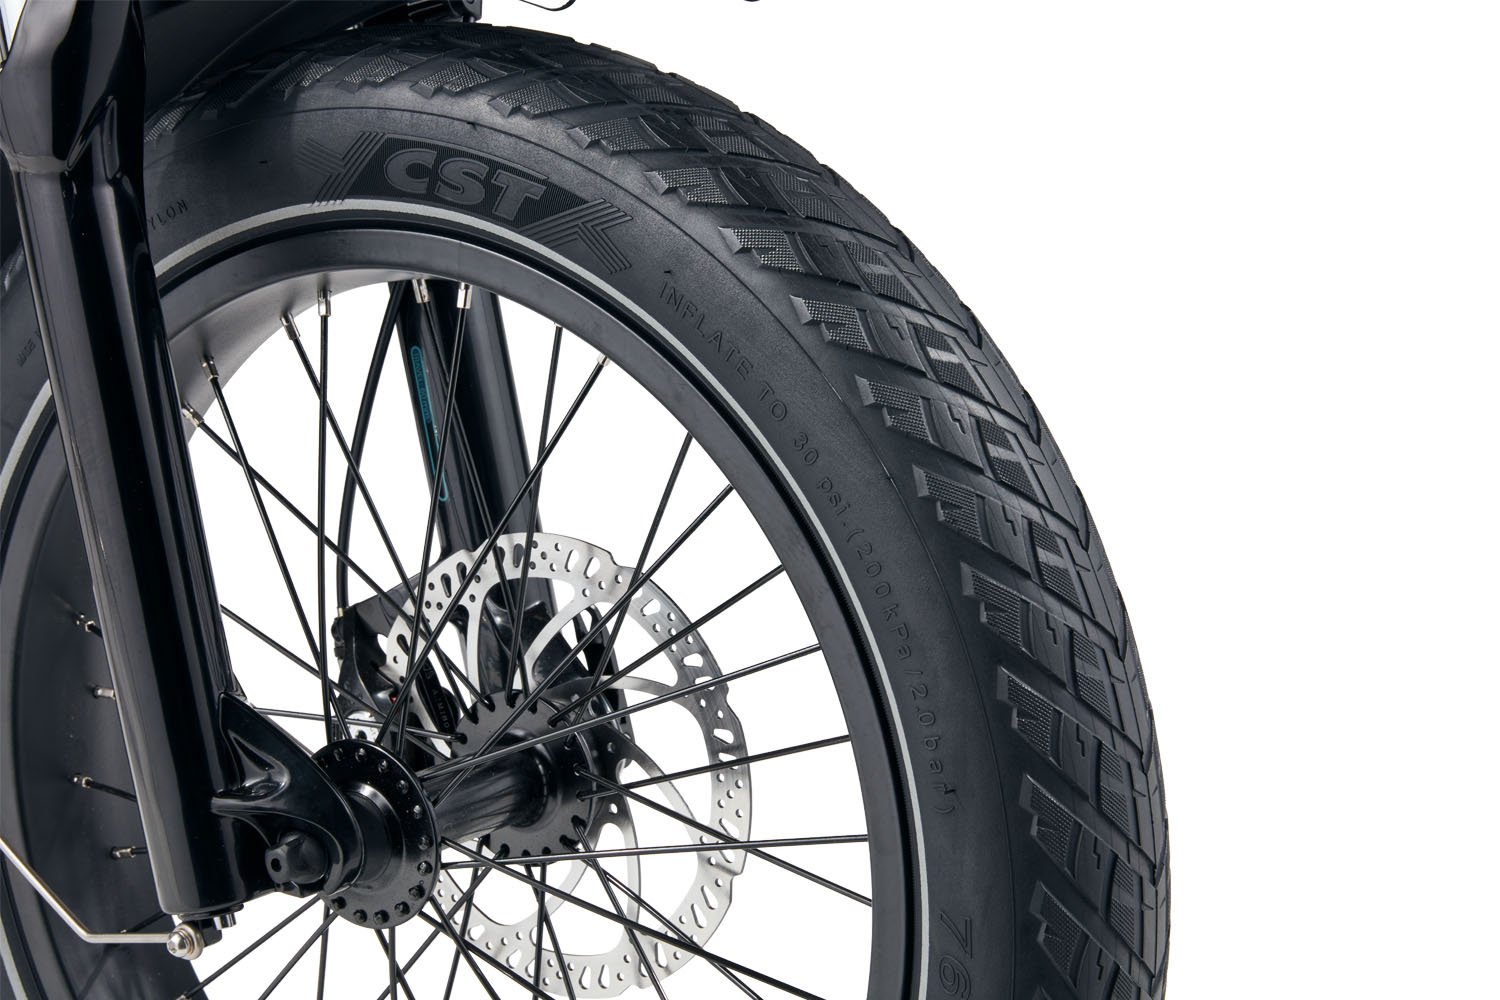 RadMini's puncture resistant tires